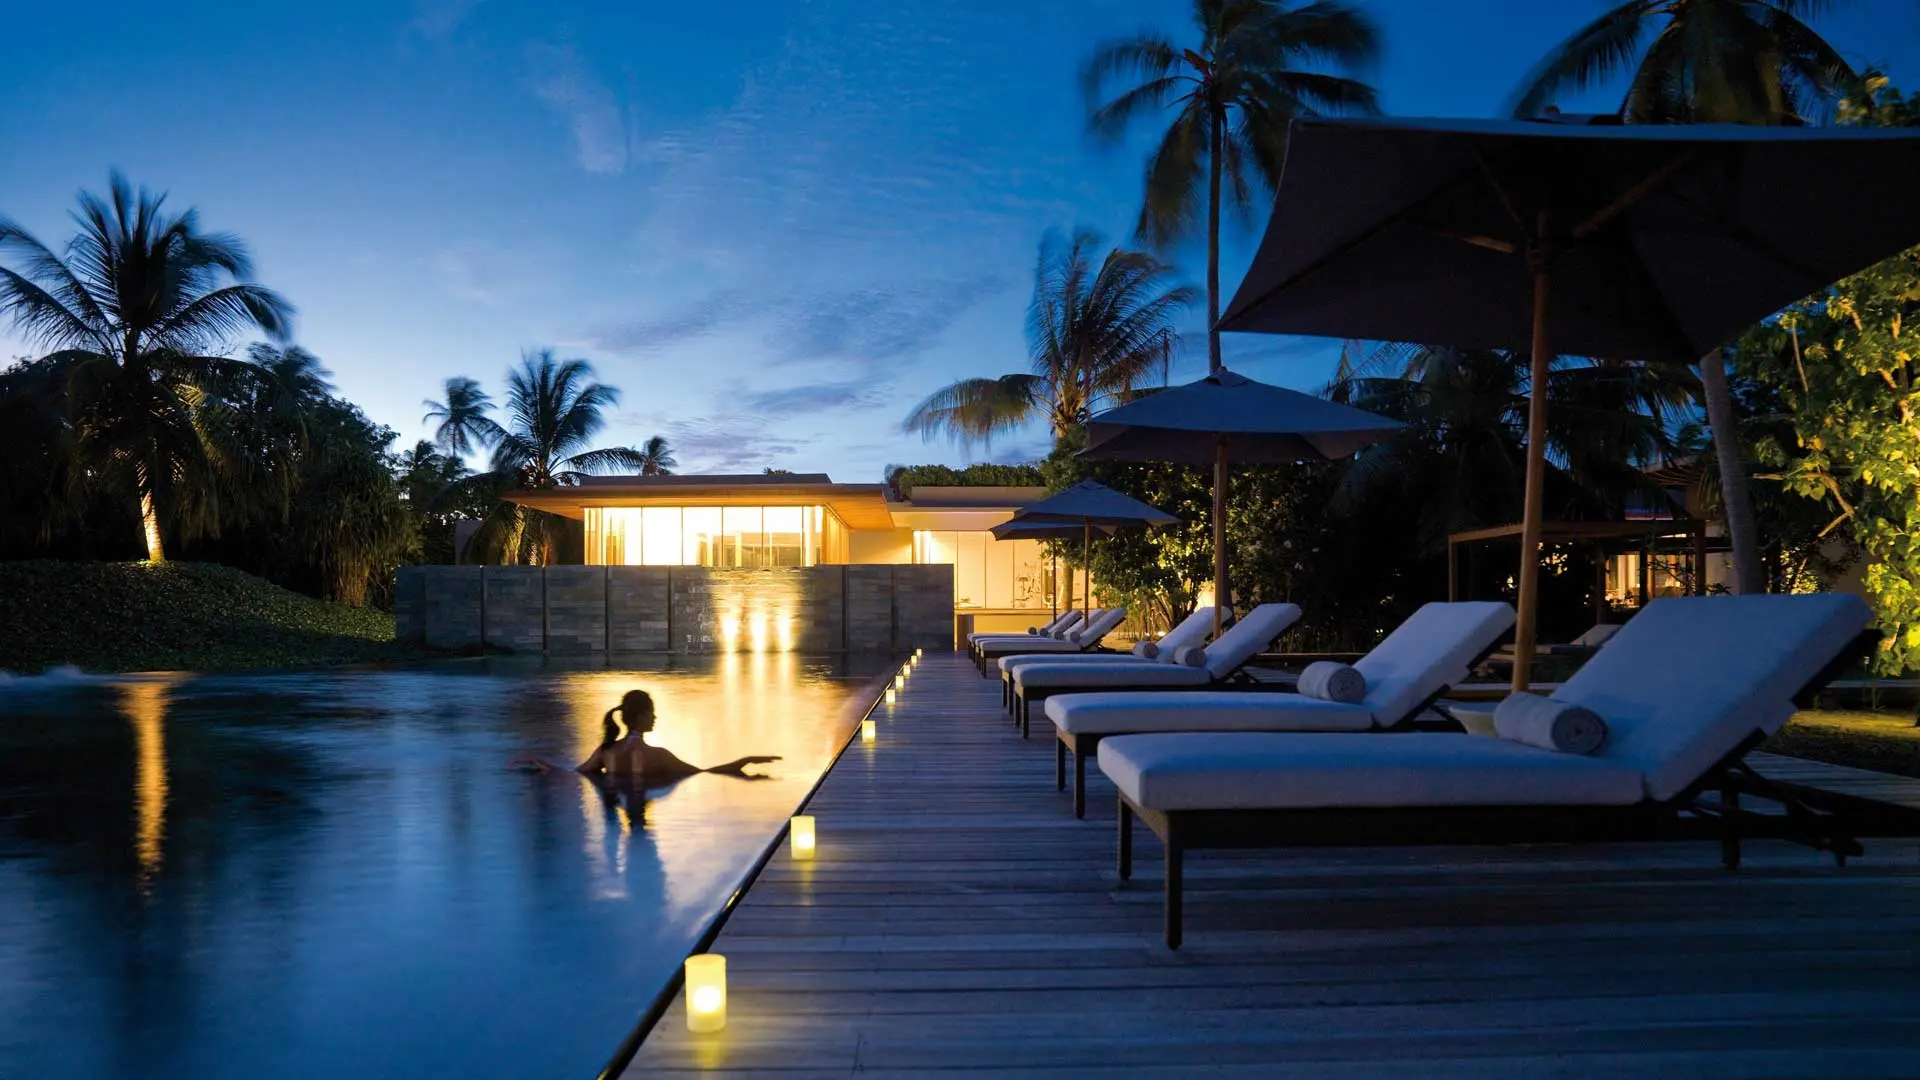 Hotel review Service & Facilities' - Park Hyatt Maldives Hadahaa - 9